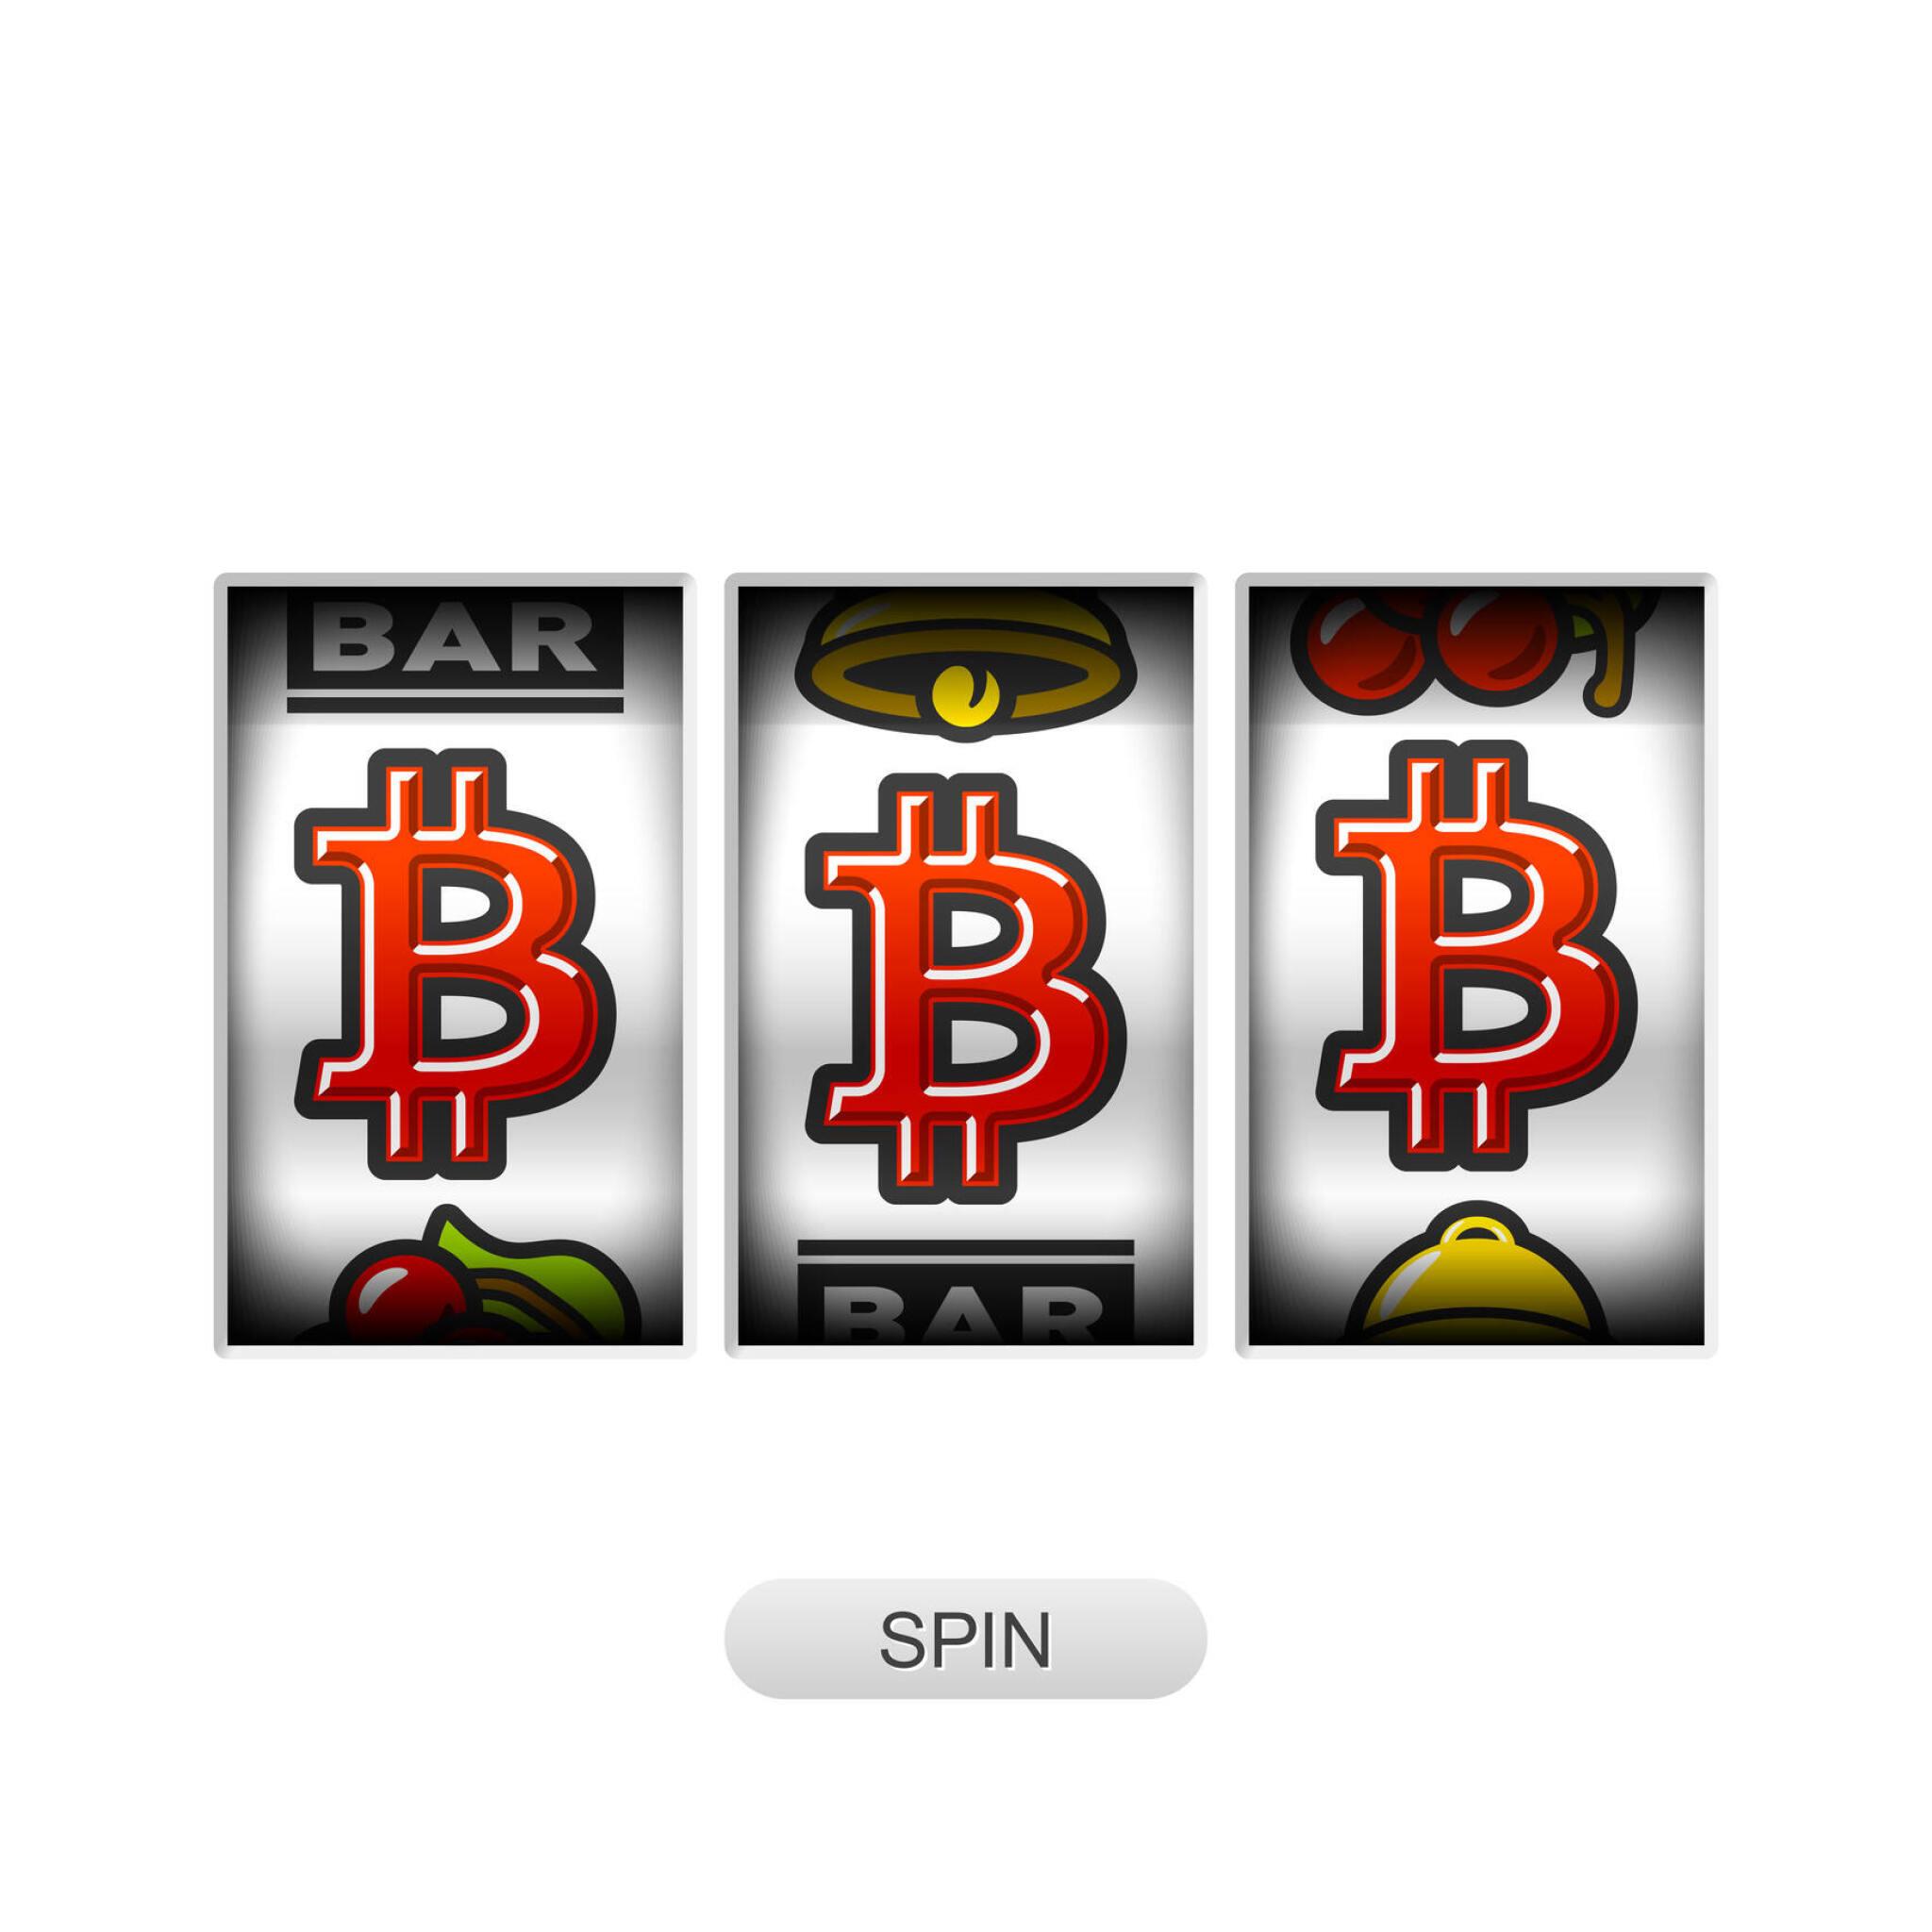 bitcoin slots